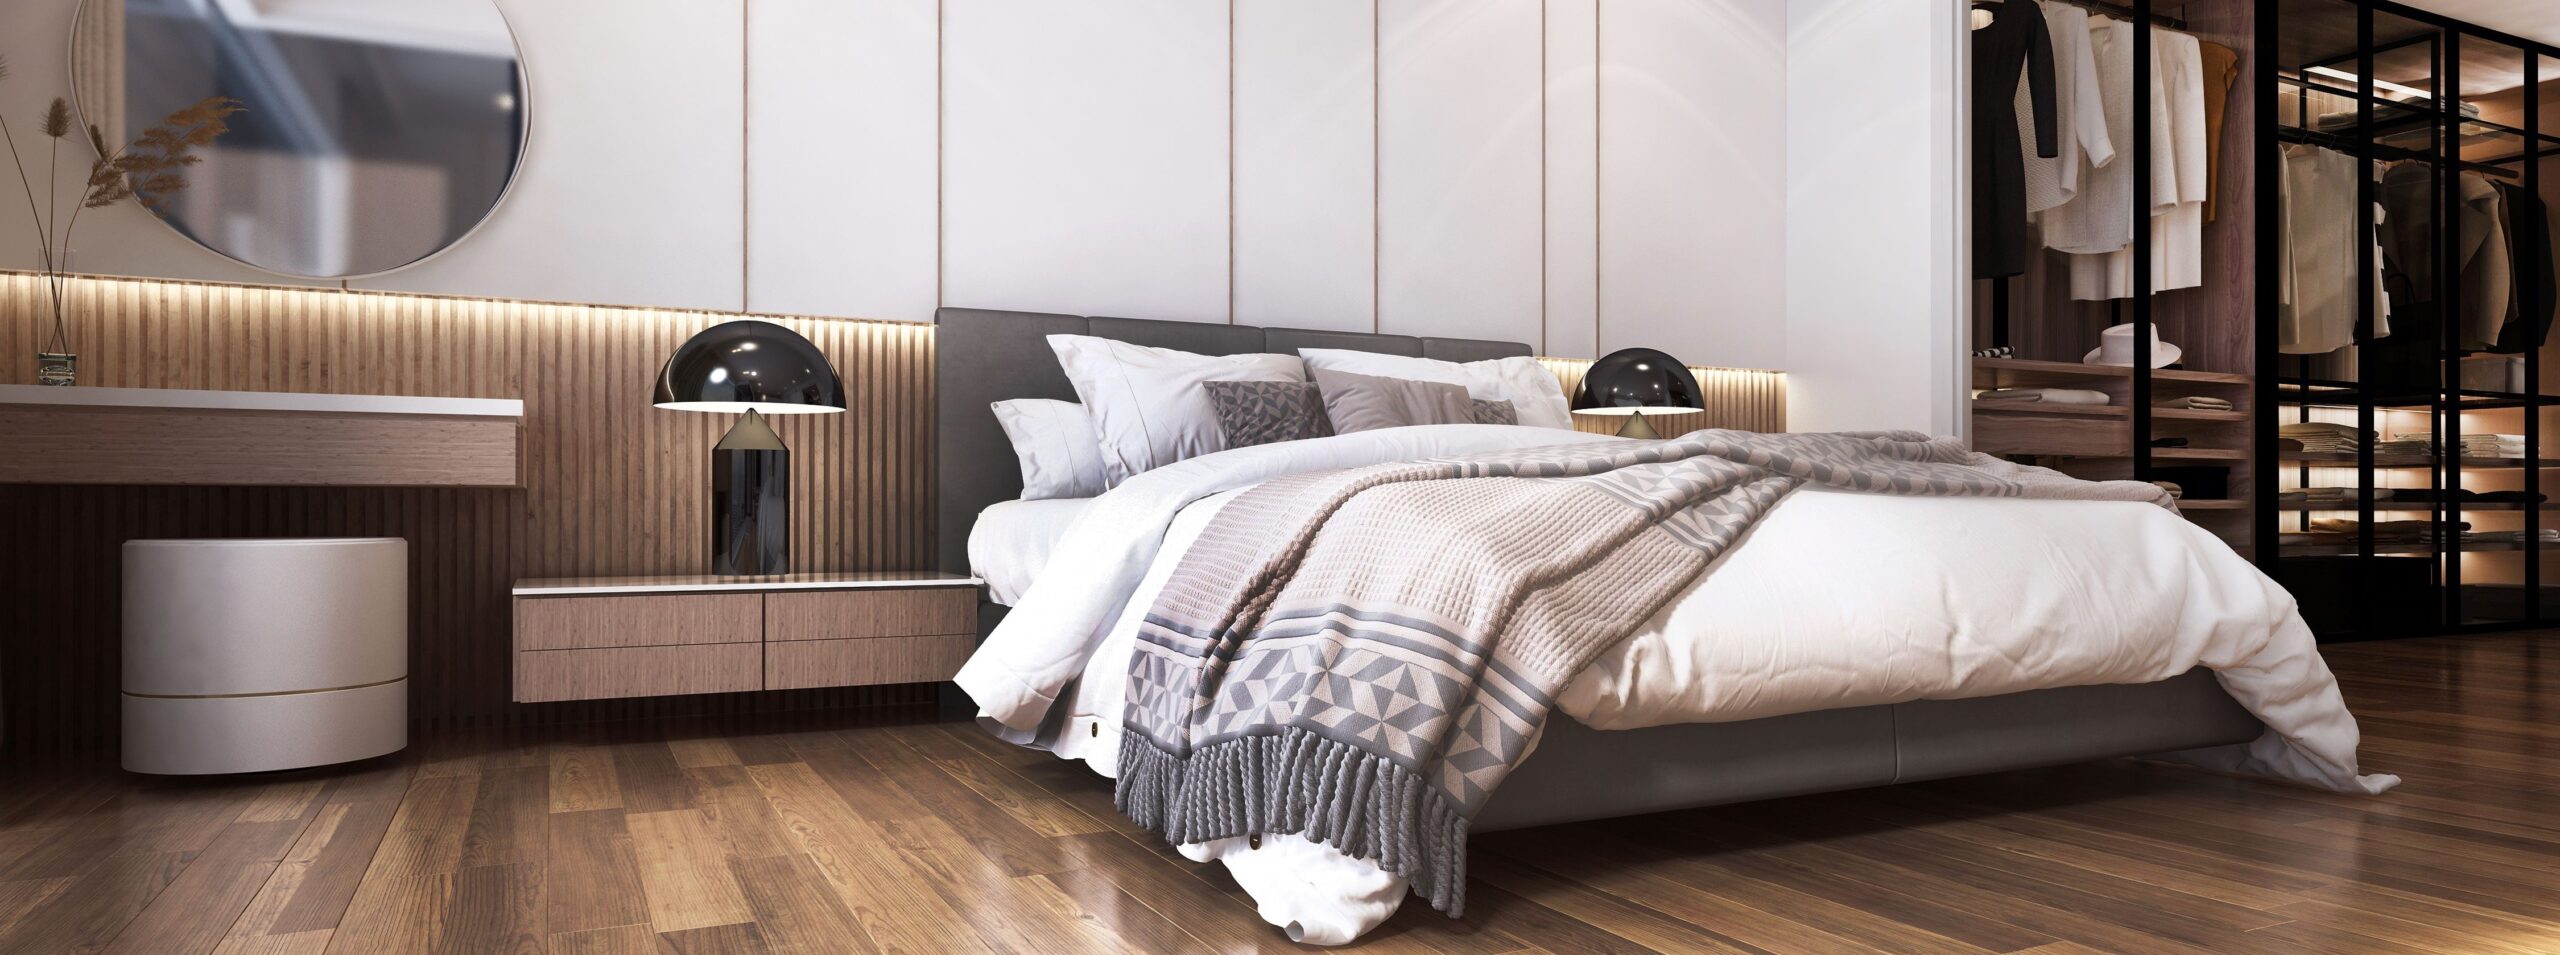 Moderne, luxuriöse, schöne Modellszene mit Schlafzimmer-Innenarchitektur und gemustertem Wandhintergrund und begehbarem Kleiderschrank